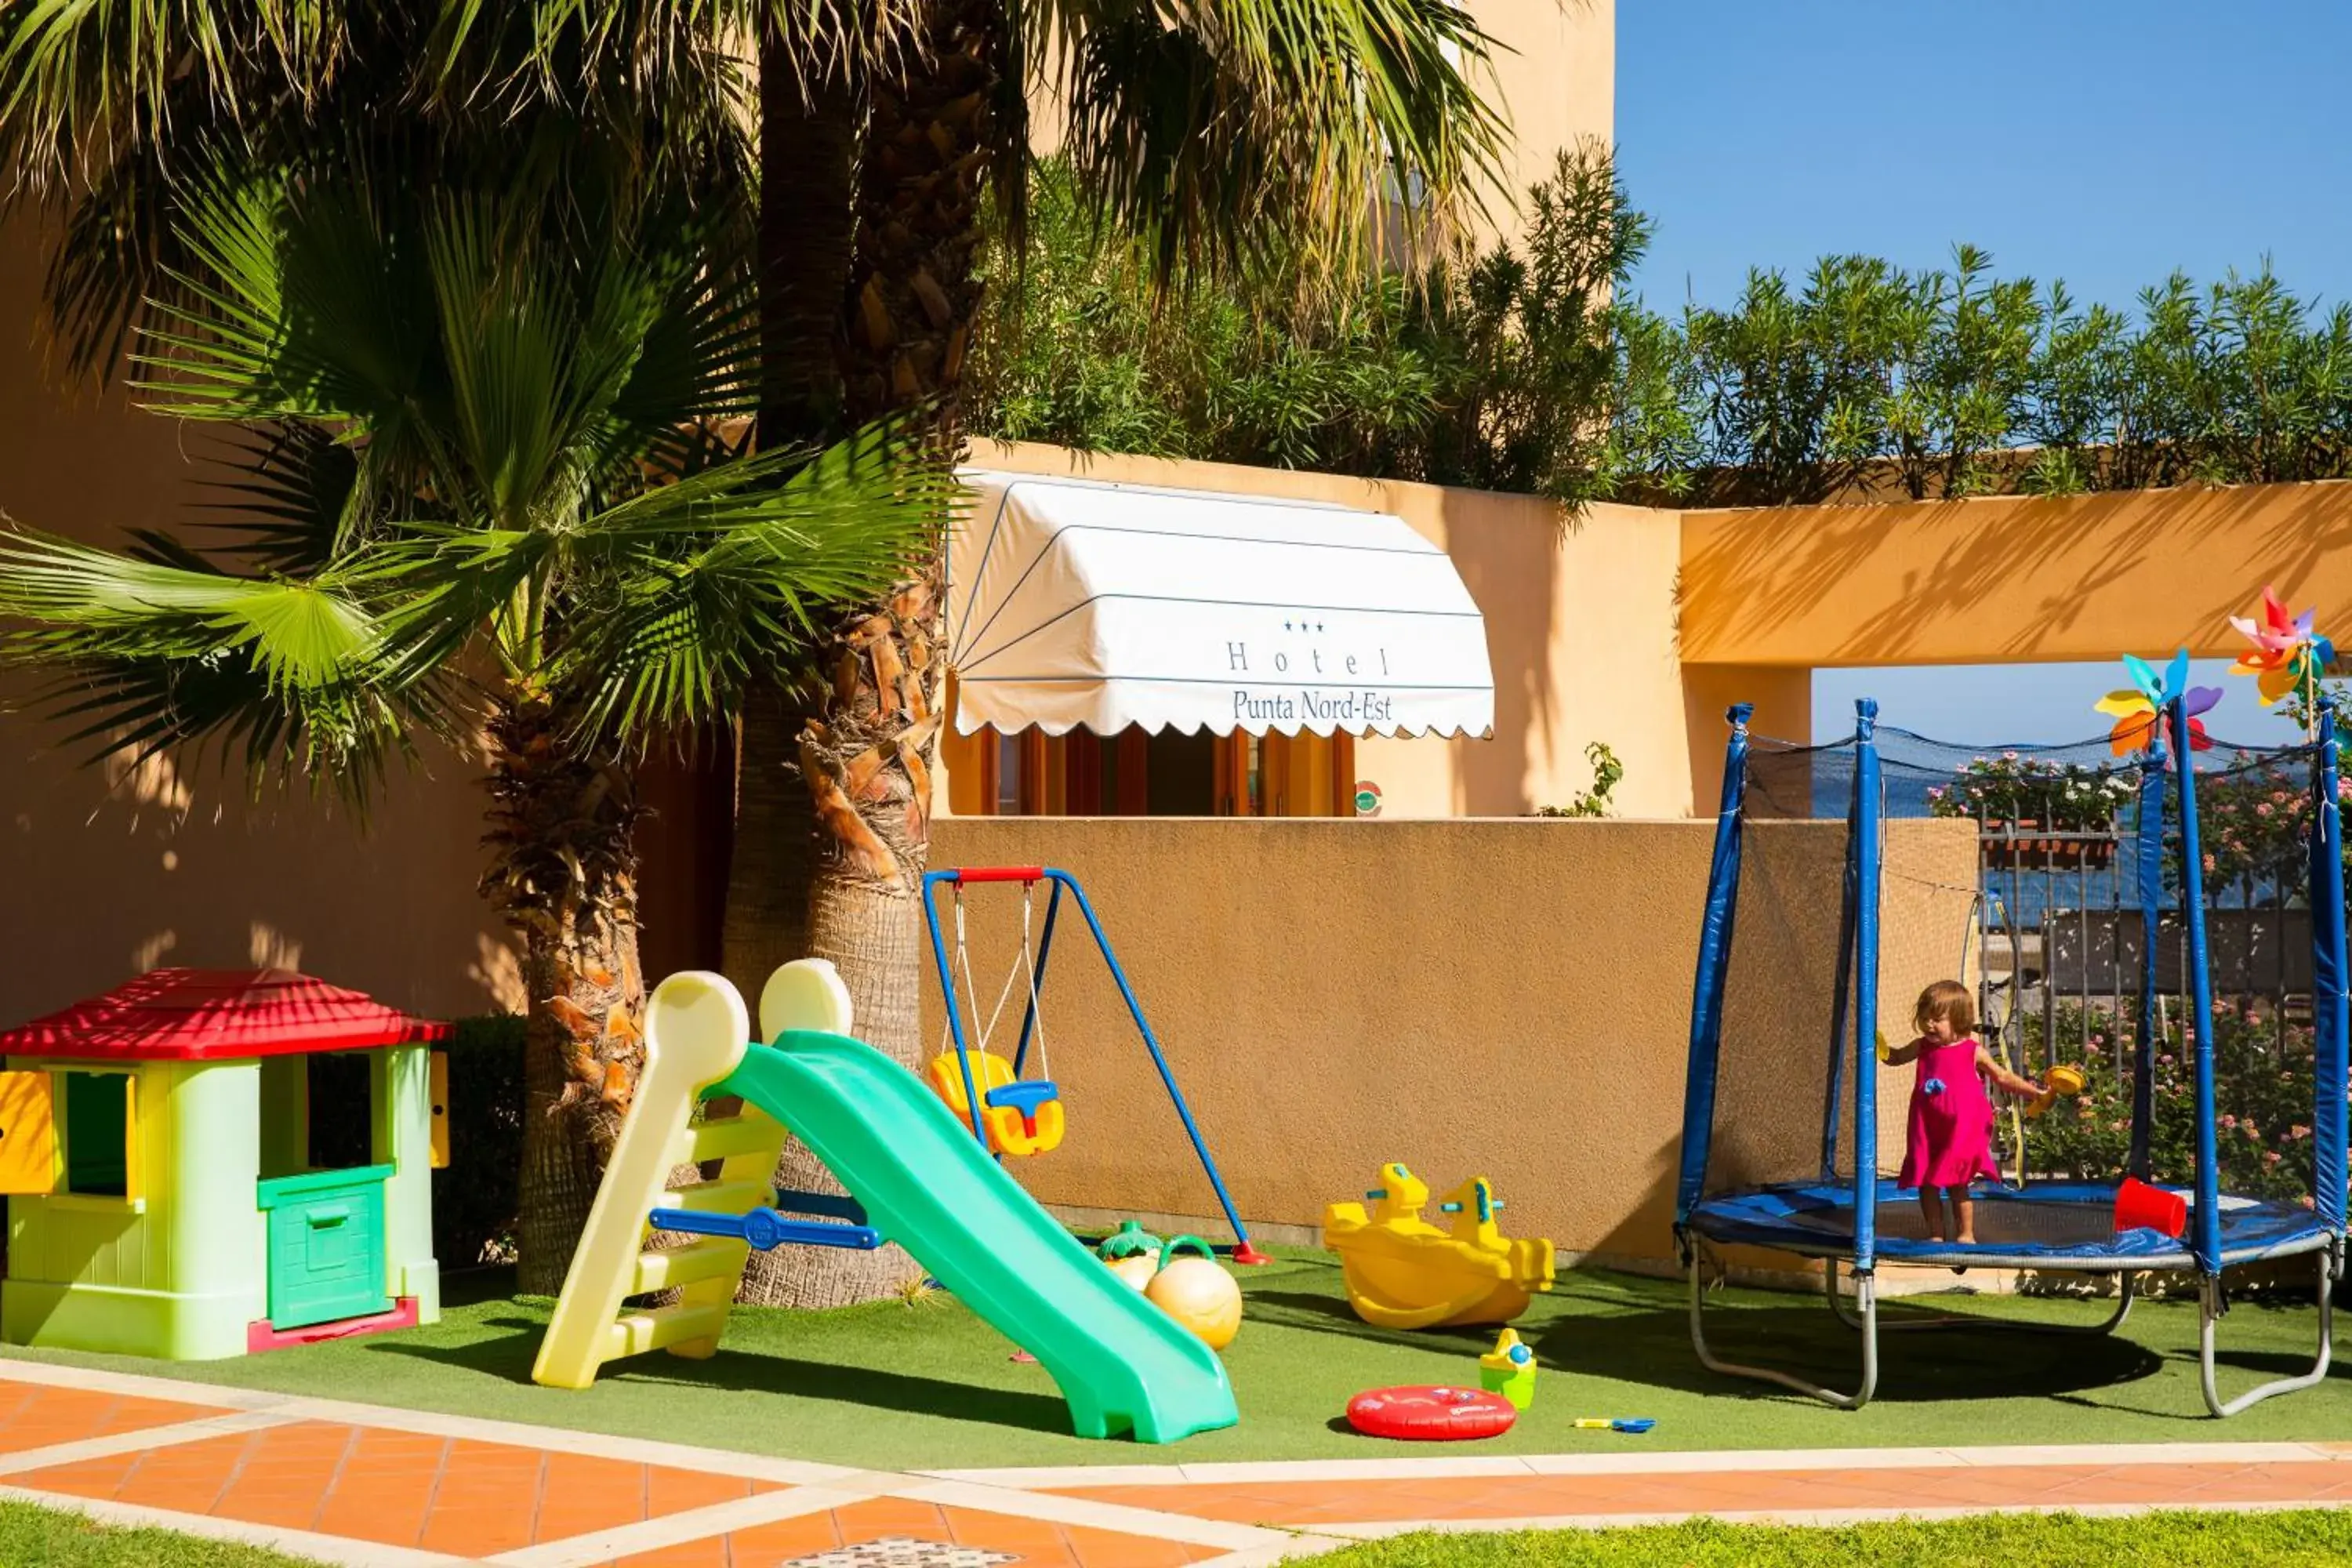 Children play ground, Children's Play Area in Hotel Punta Nord Est